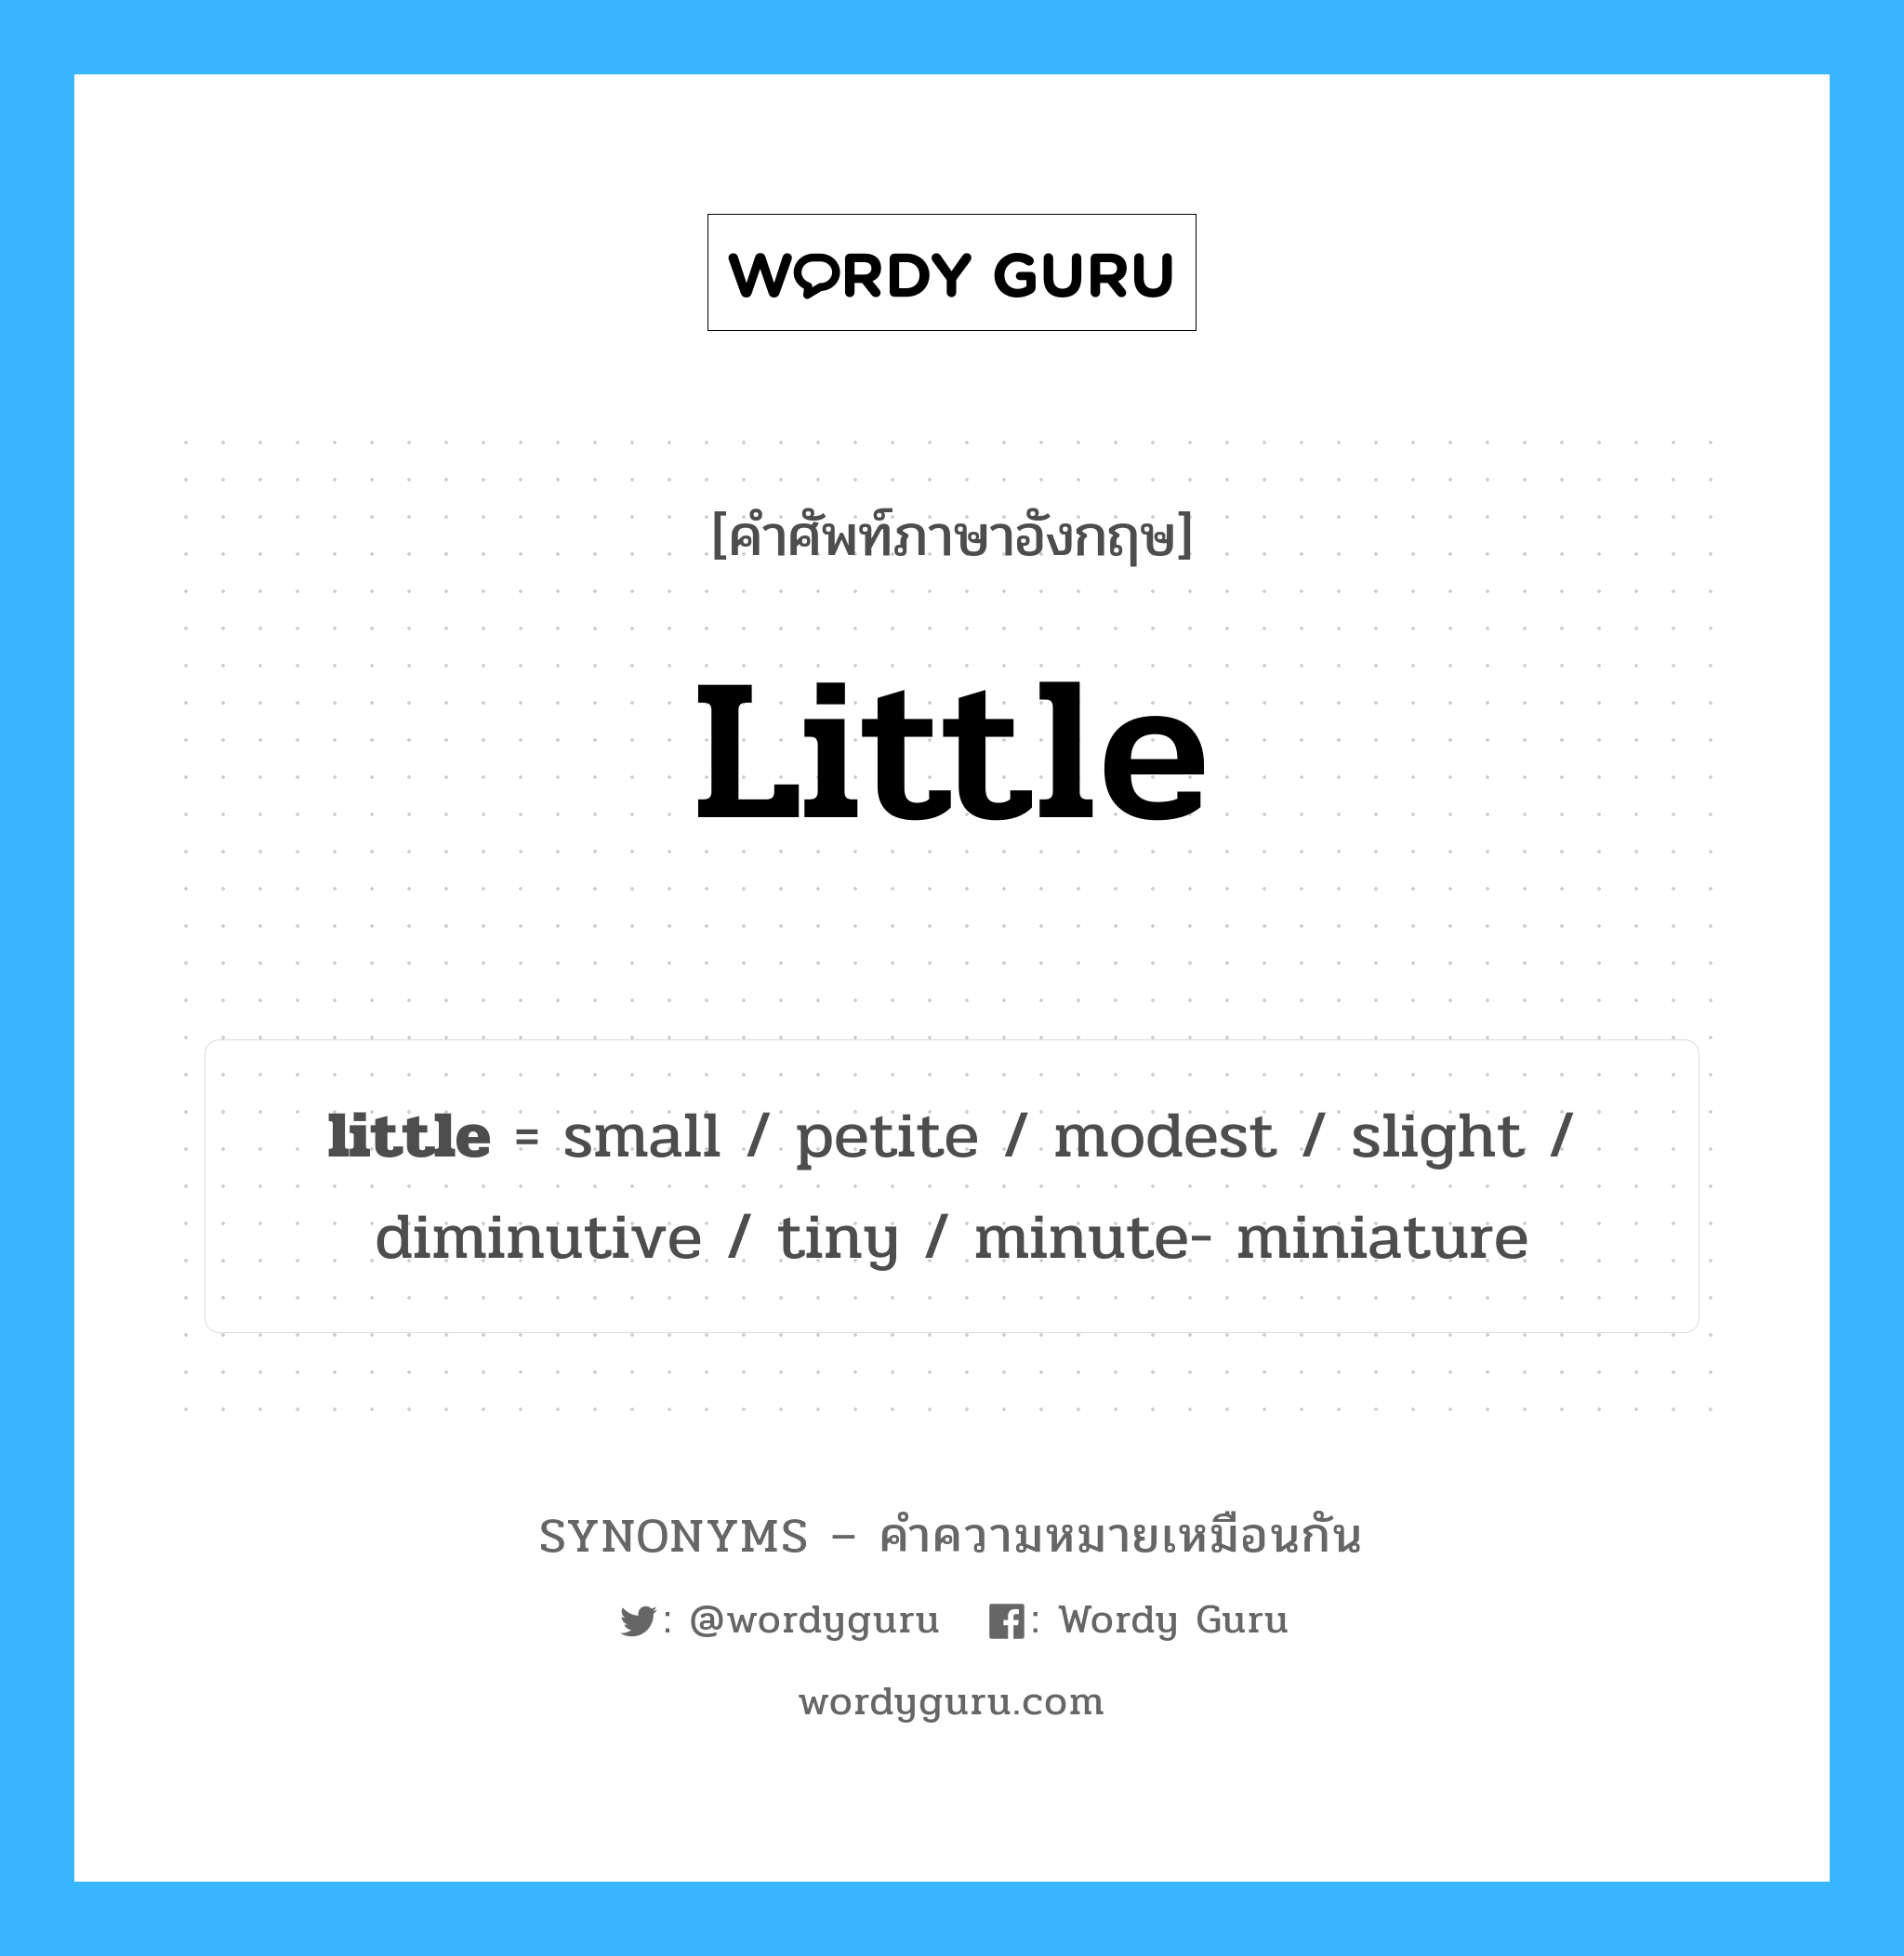 tiny เป็นหนึ่งใน little และมีคำอื่น ๆ อีกดังนี้, คำศัพท์ภาษาอังกฤษ tiny ความหมายคล้ายกันกับ little แปลว่า เล็ก ๆ หมวด little